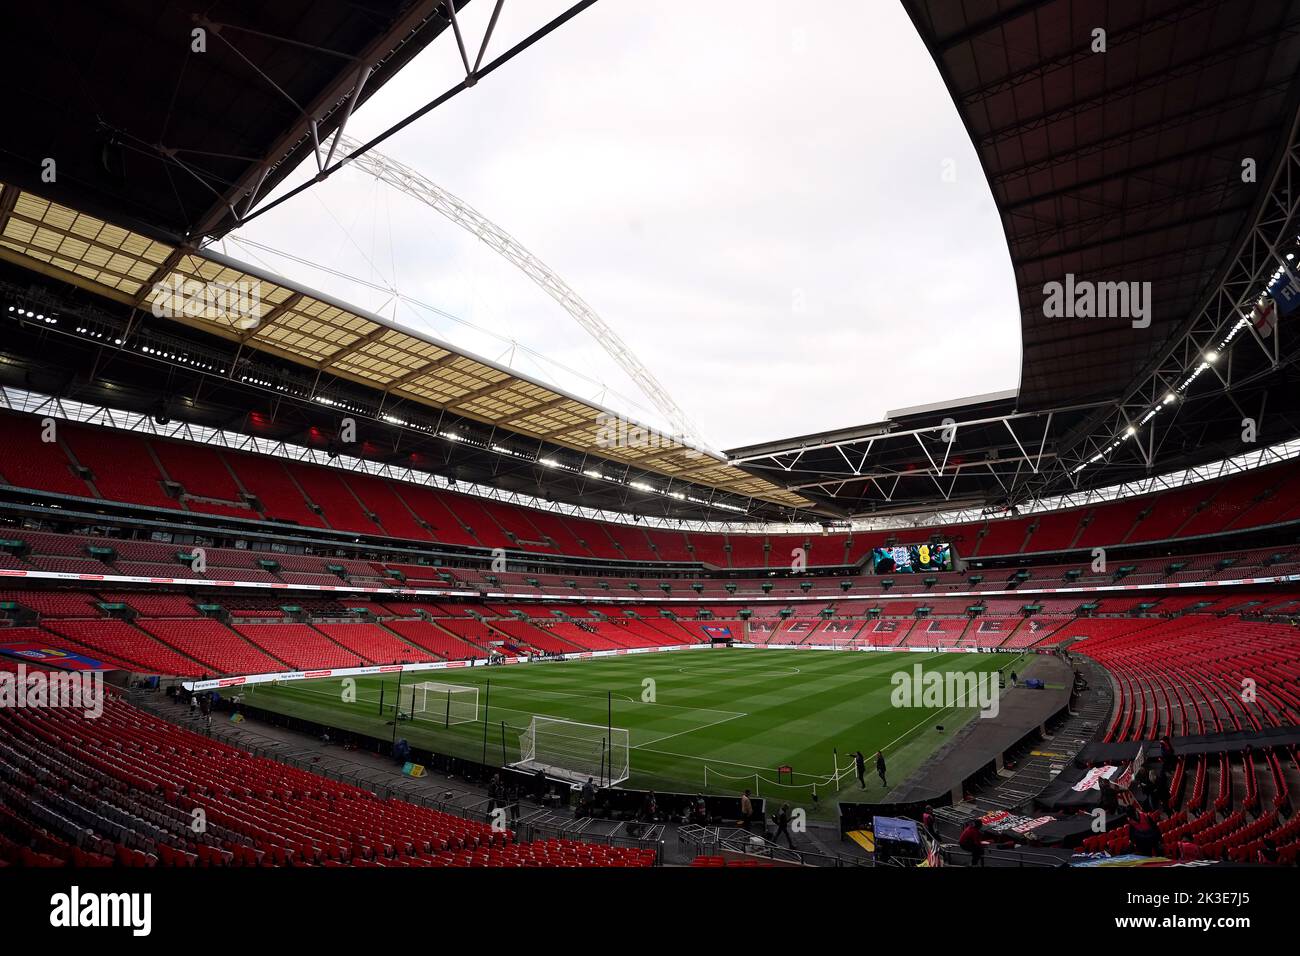 Vista general del interior del estadio antes del partido de la Liga de las Naciones de la UEFA en el estadio de Wembley, Londres. Fecha de la foto: Lunes 26 de septiembre de 2022. Foto de stock